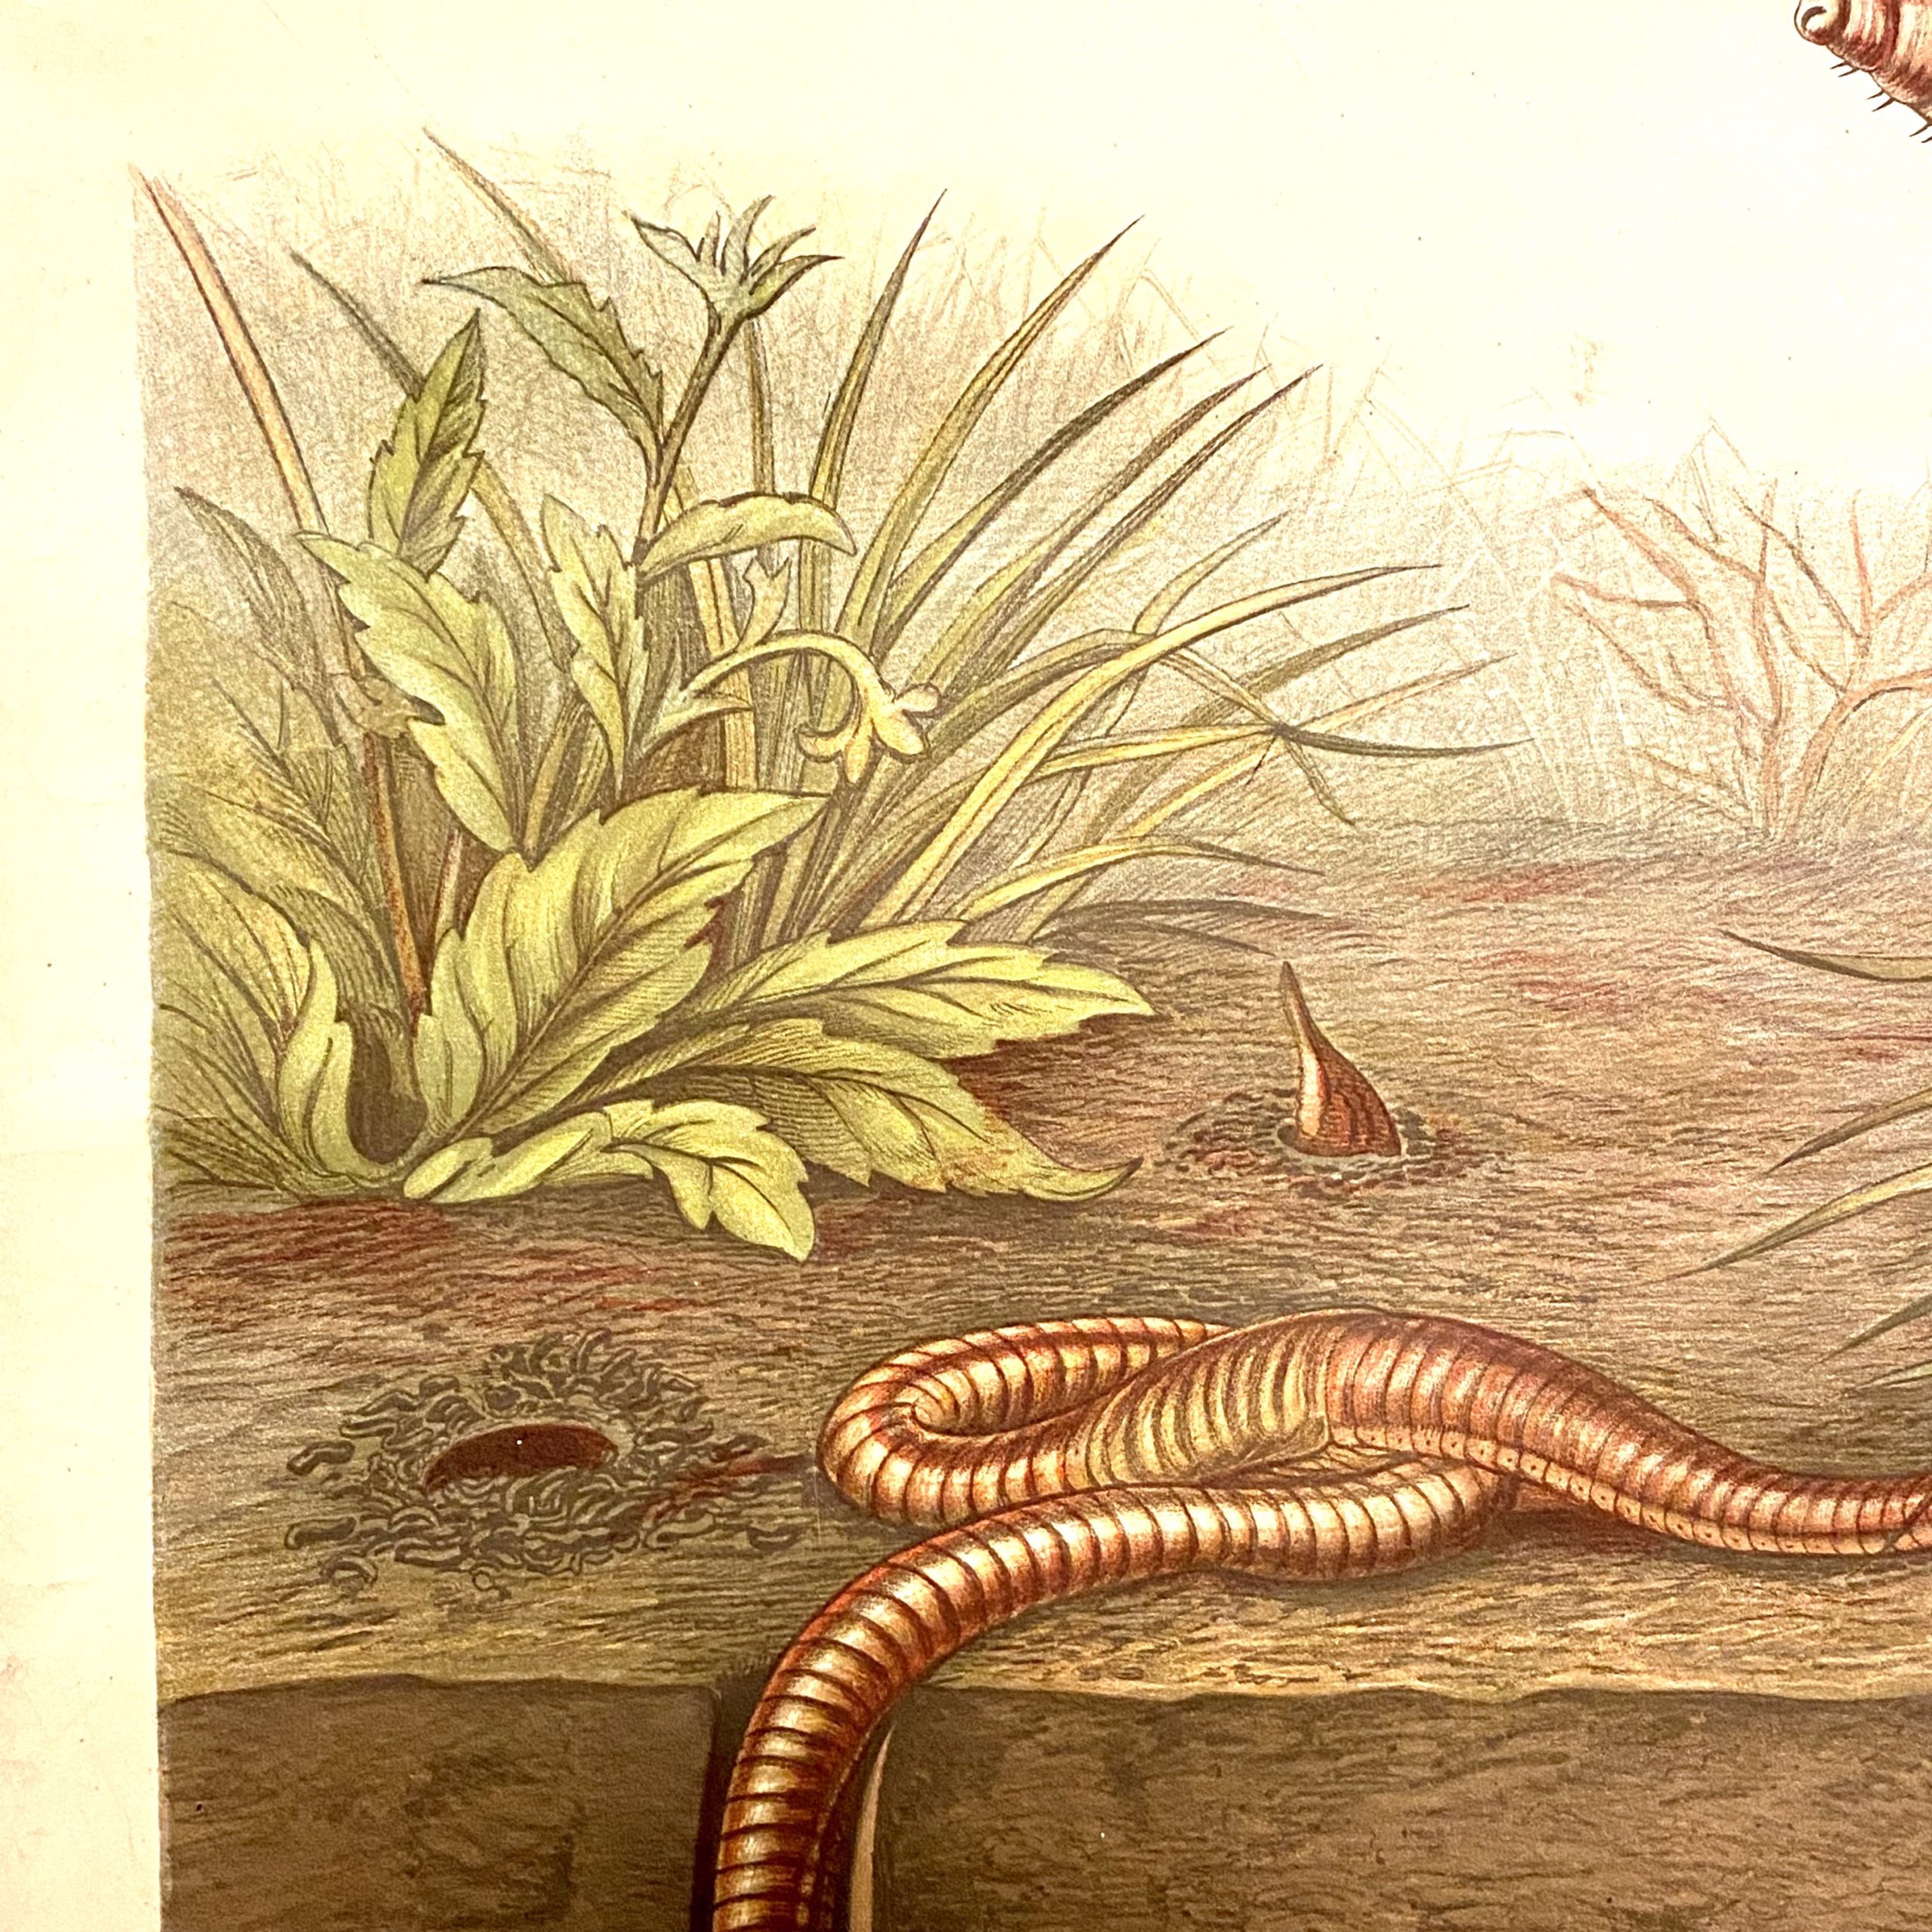 Regenwurm (Lumbricus terrestris) Albert Kull. regenworm buitenluchtig